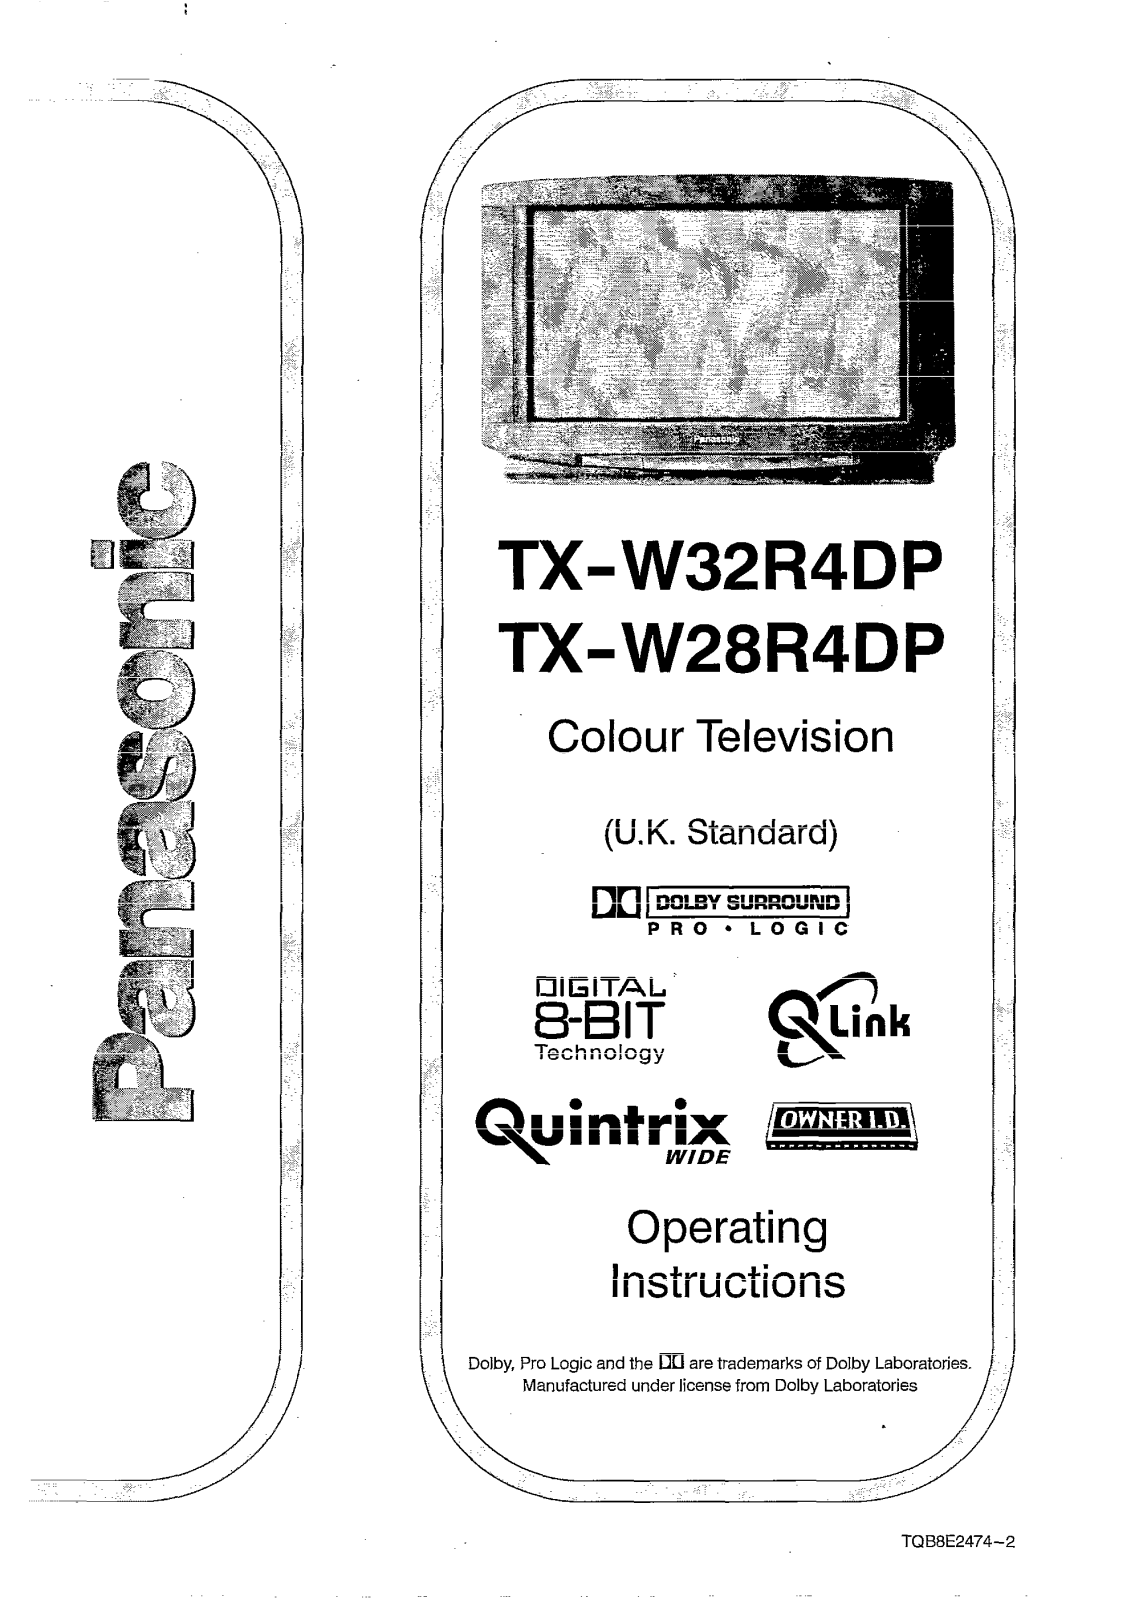 Panasonic TX-W28R4, TX-W32R4DP, TX-W28R4DP User Manual